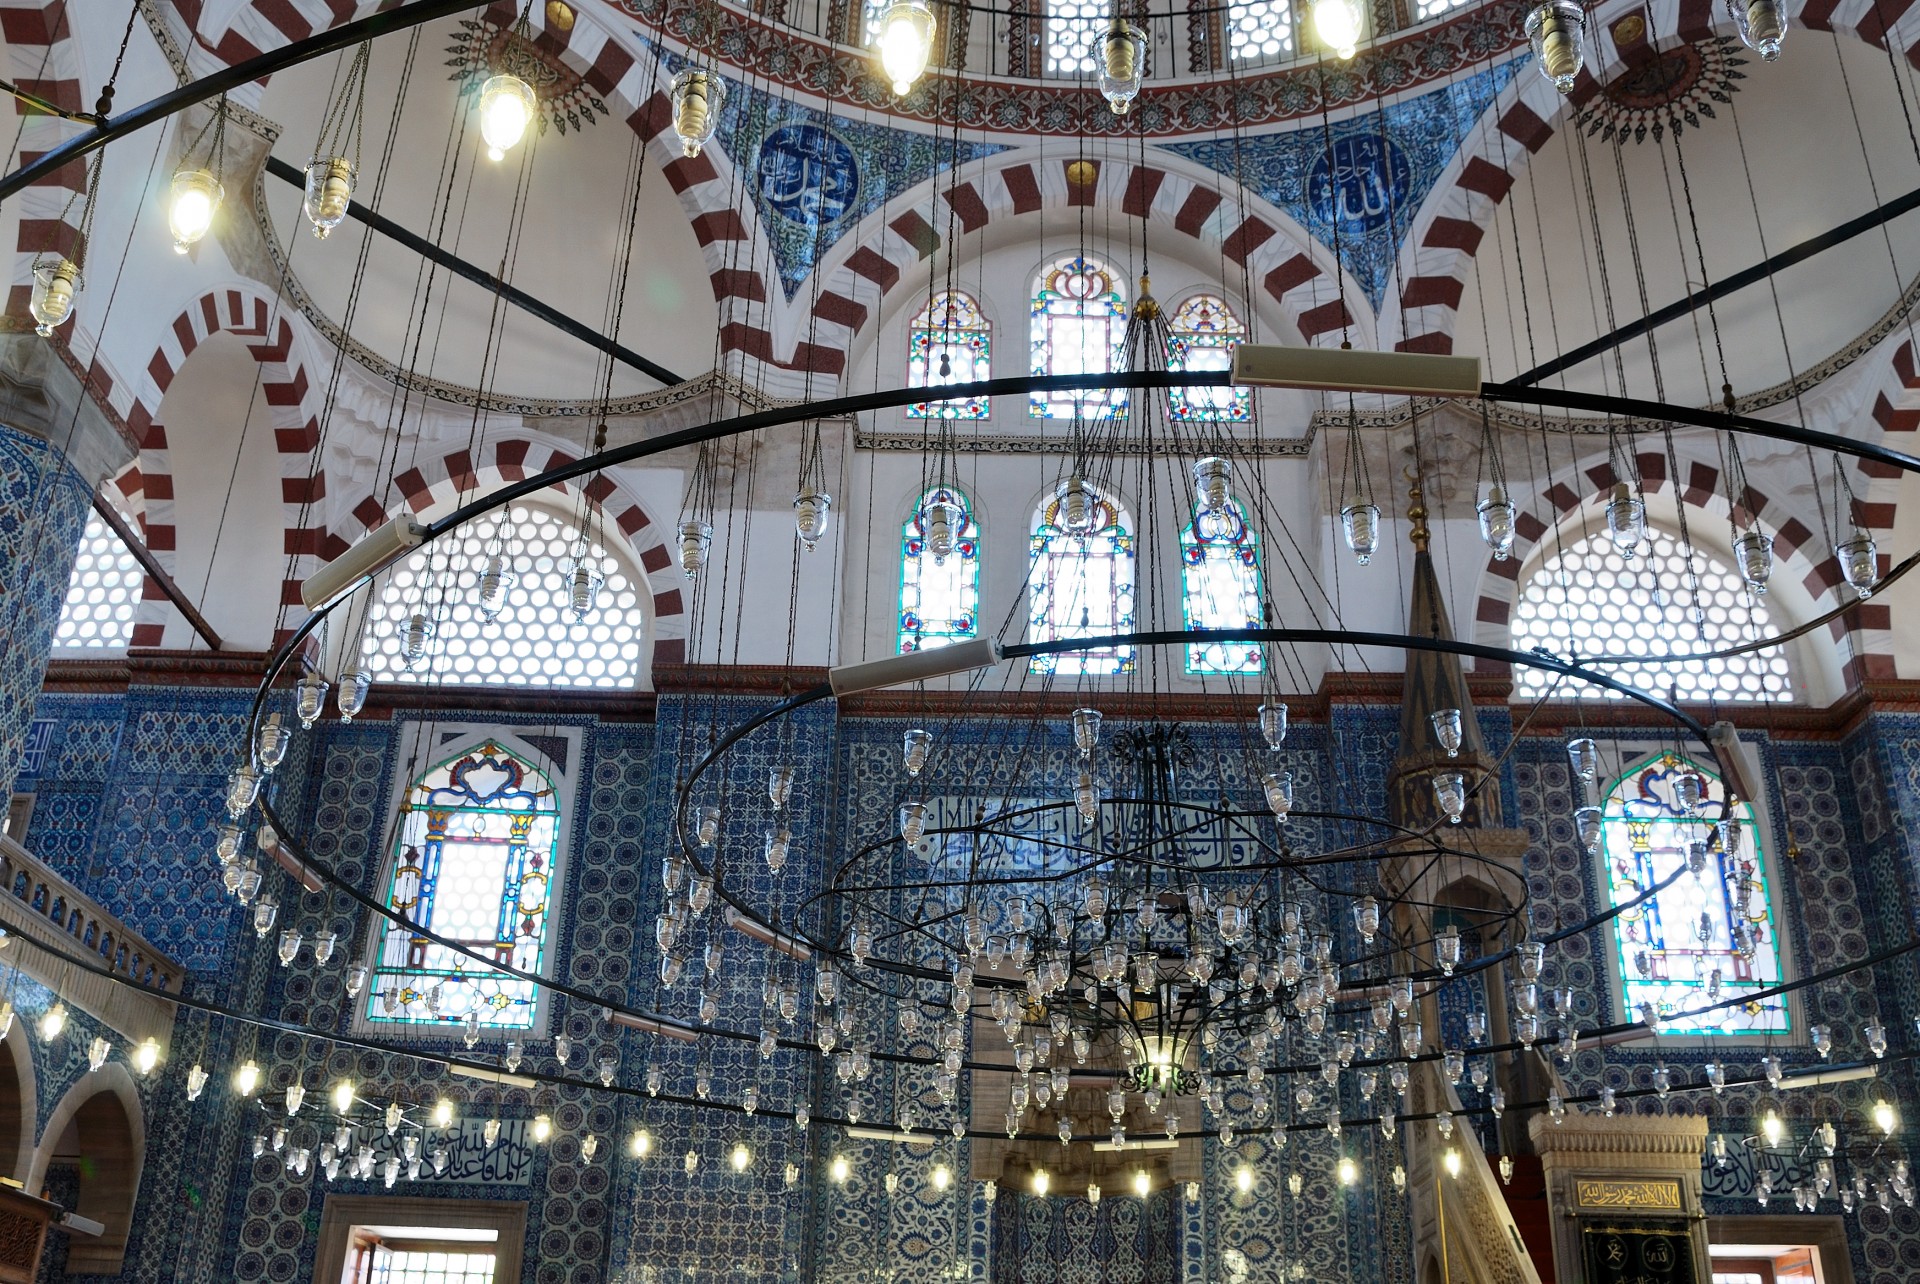 Moscheea interior